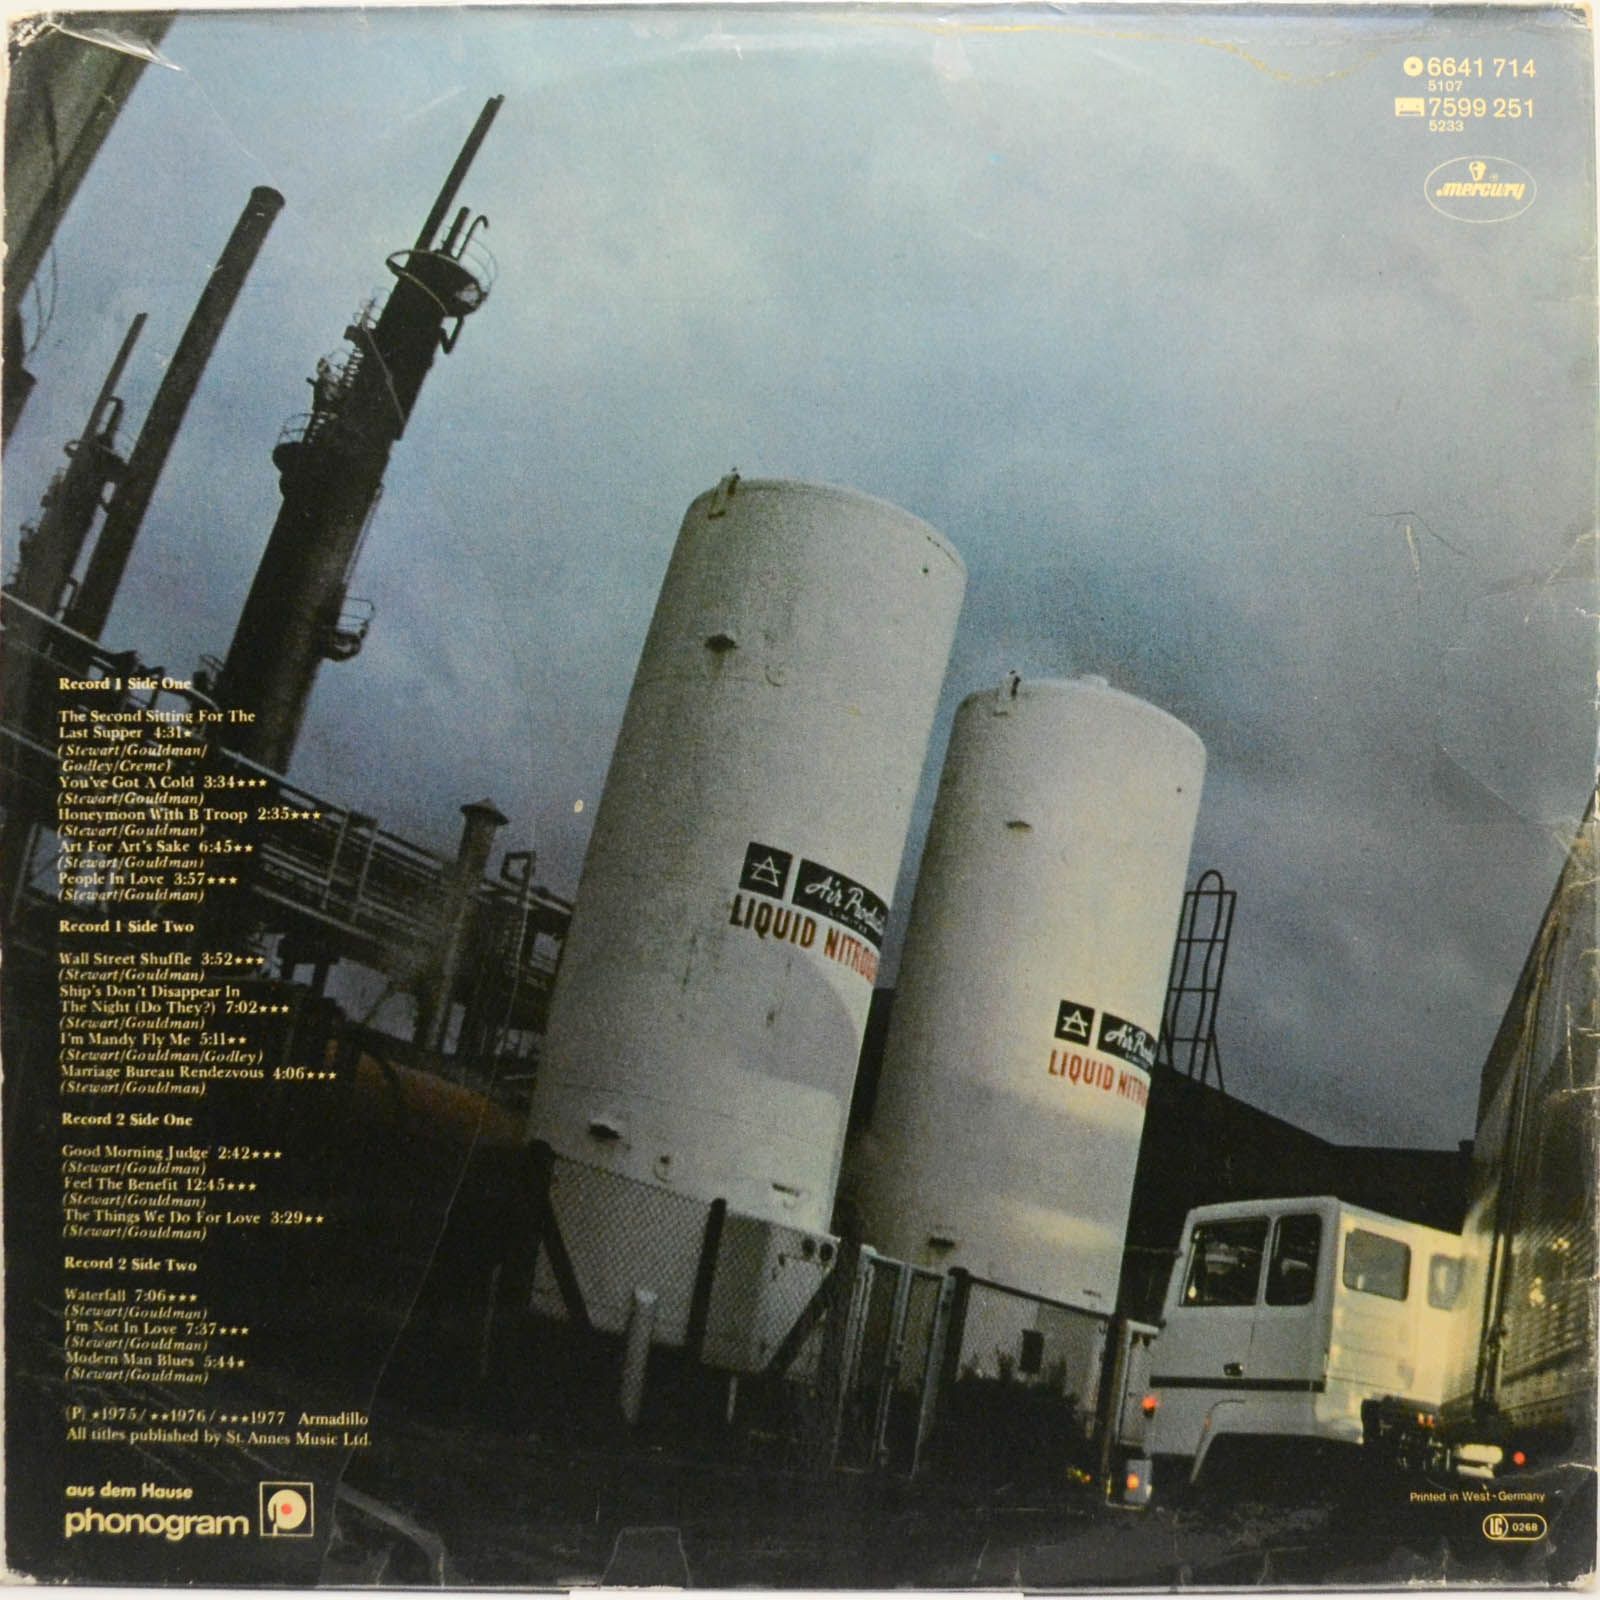 10cc — Live And Let Live (2LP), 1977